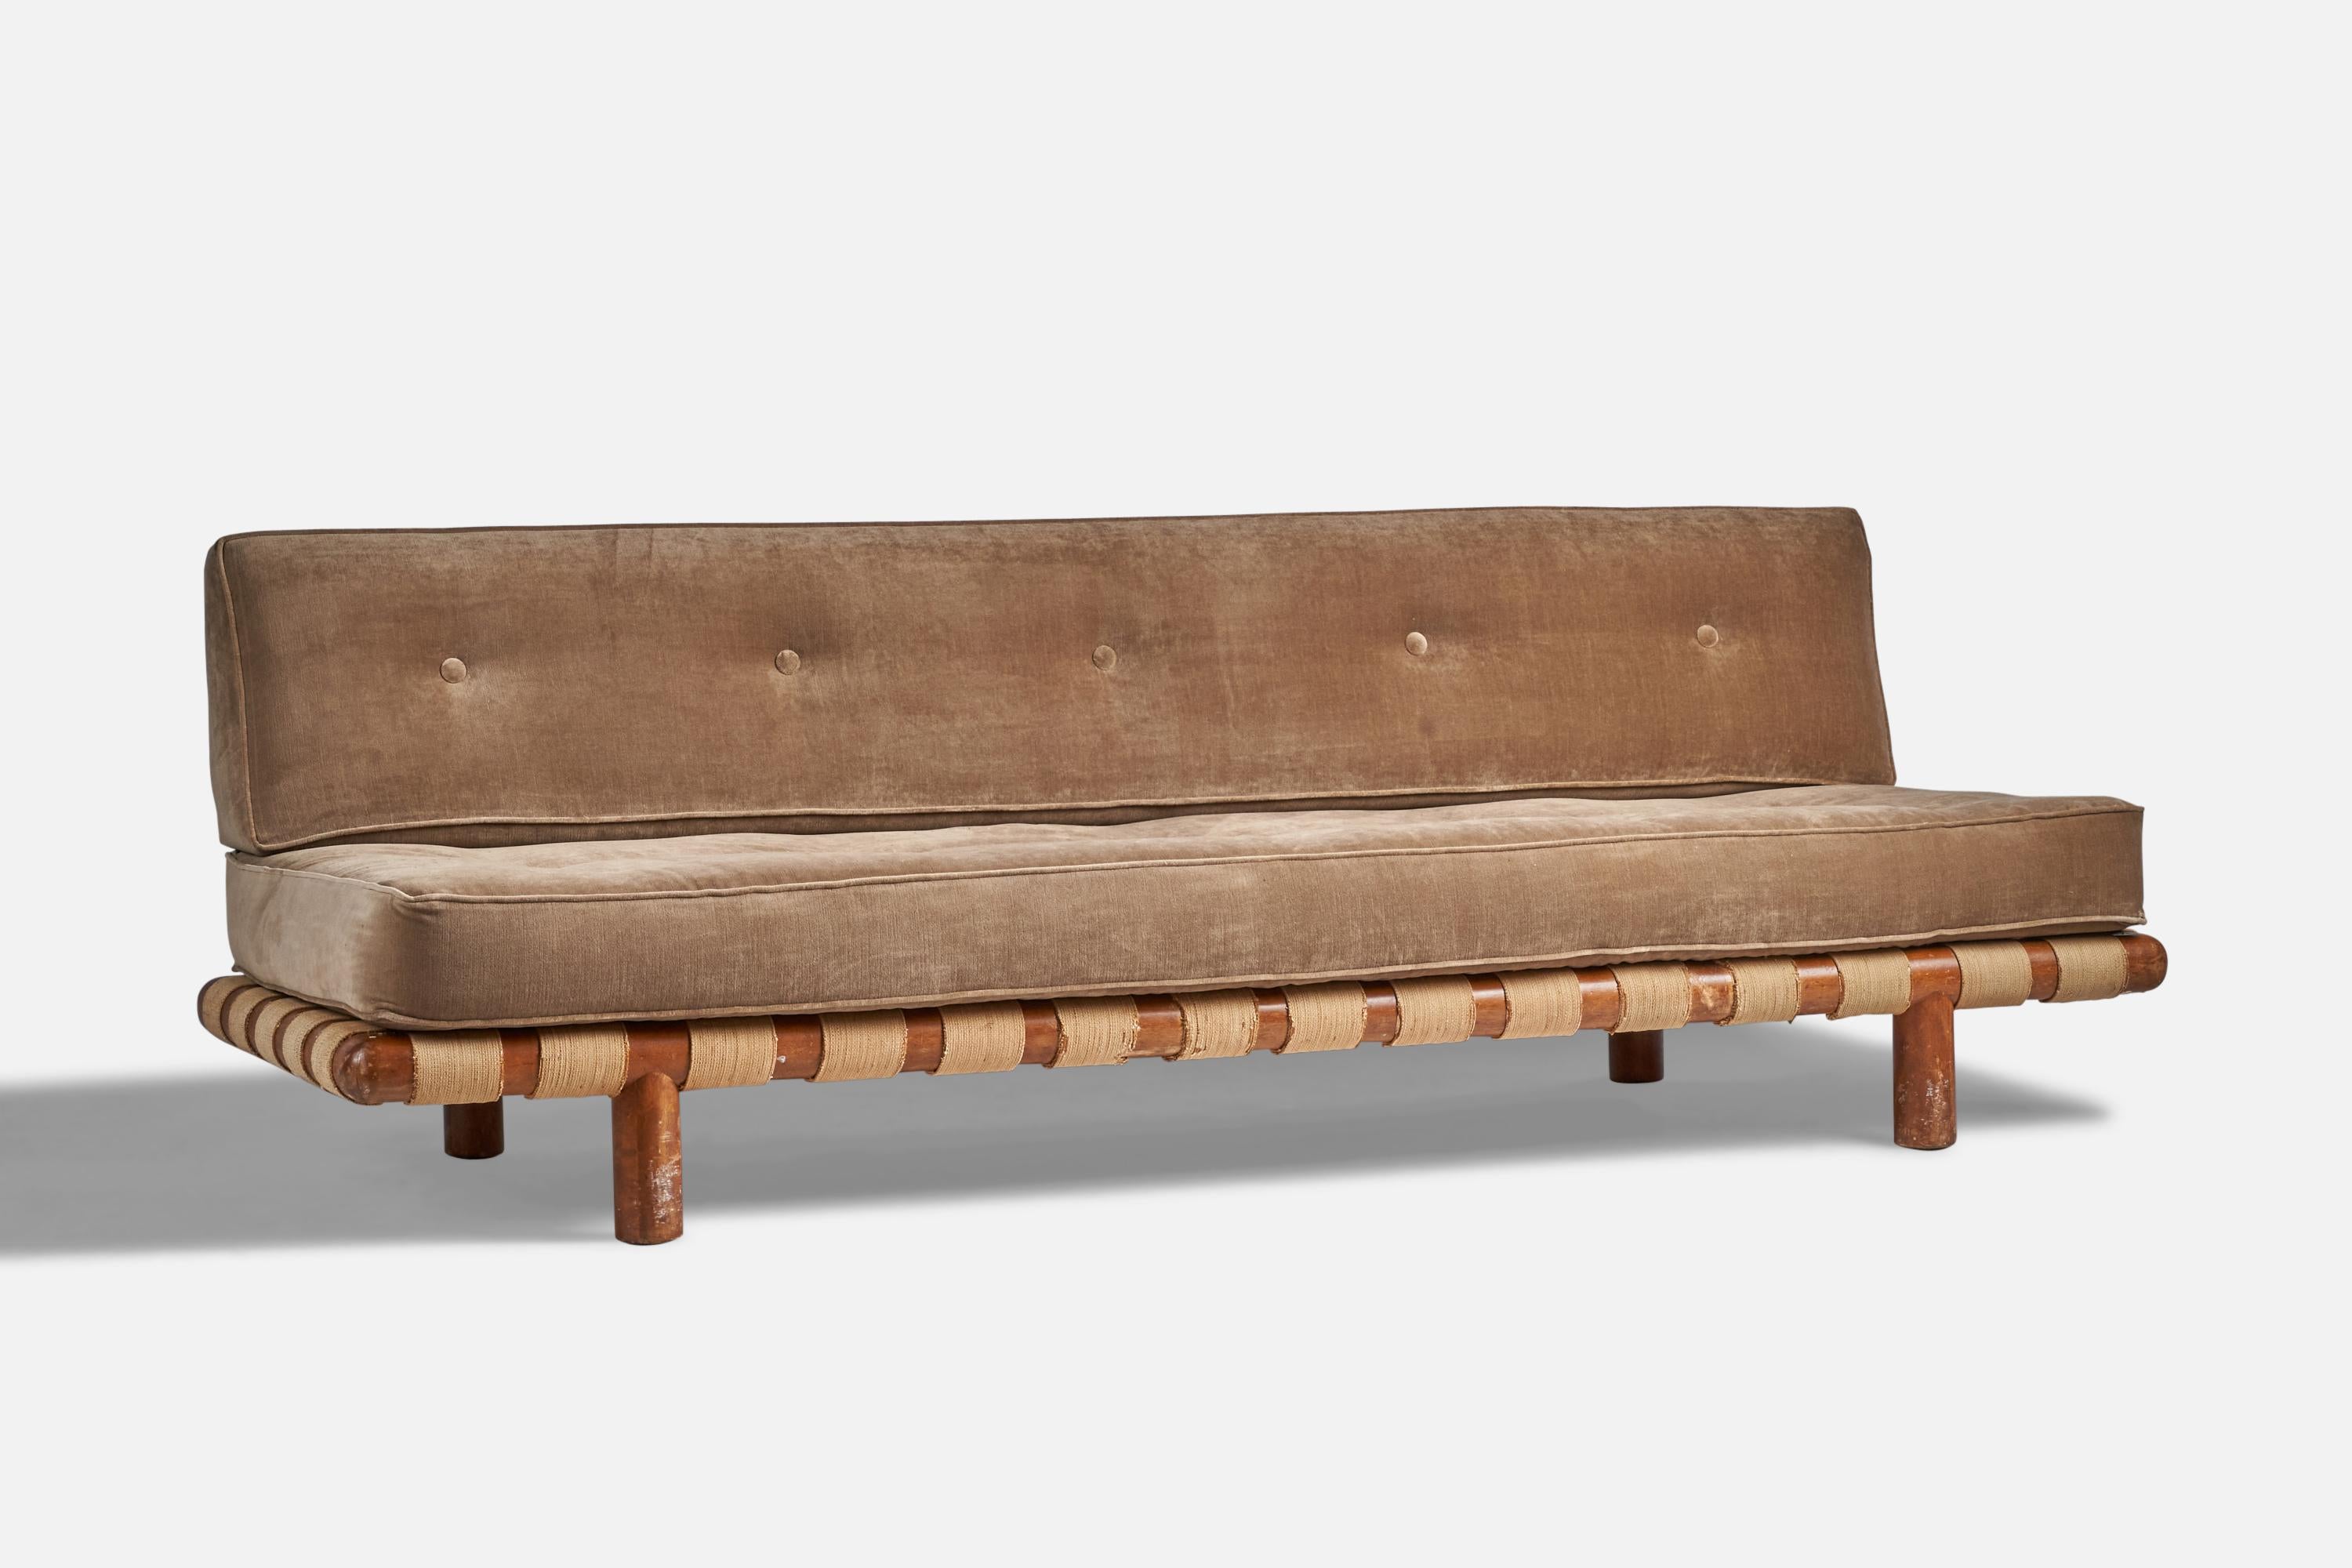 Ein Sofa aus Walnussholz, beigem Segeltuch und braunem Samt, entworfen von T.H. Robsjohn-Gibbings und hergestellt von Widdicomb Furniture Company, Grand Rapids, Michigan, USA, 1950er Jahre.

16